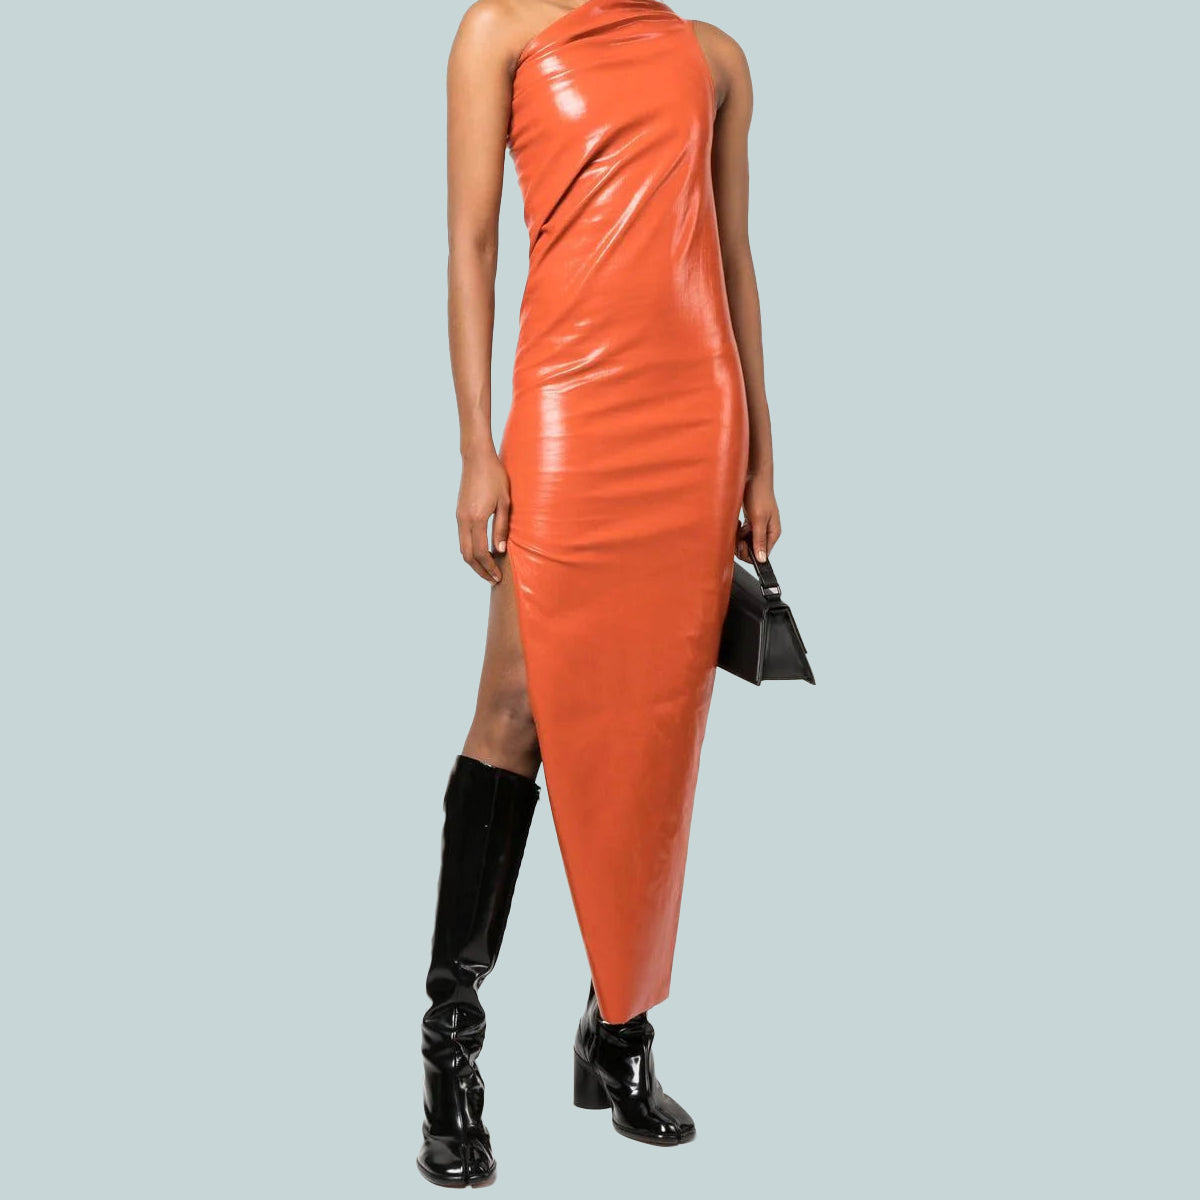 Athena gown orange